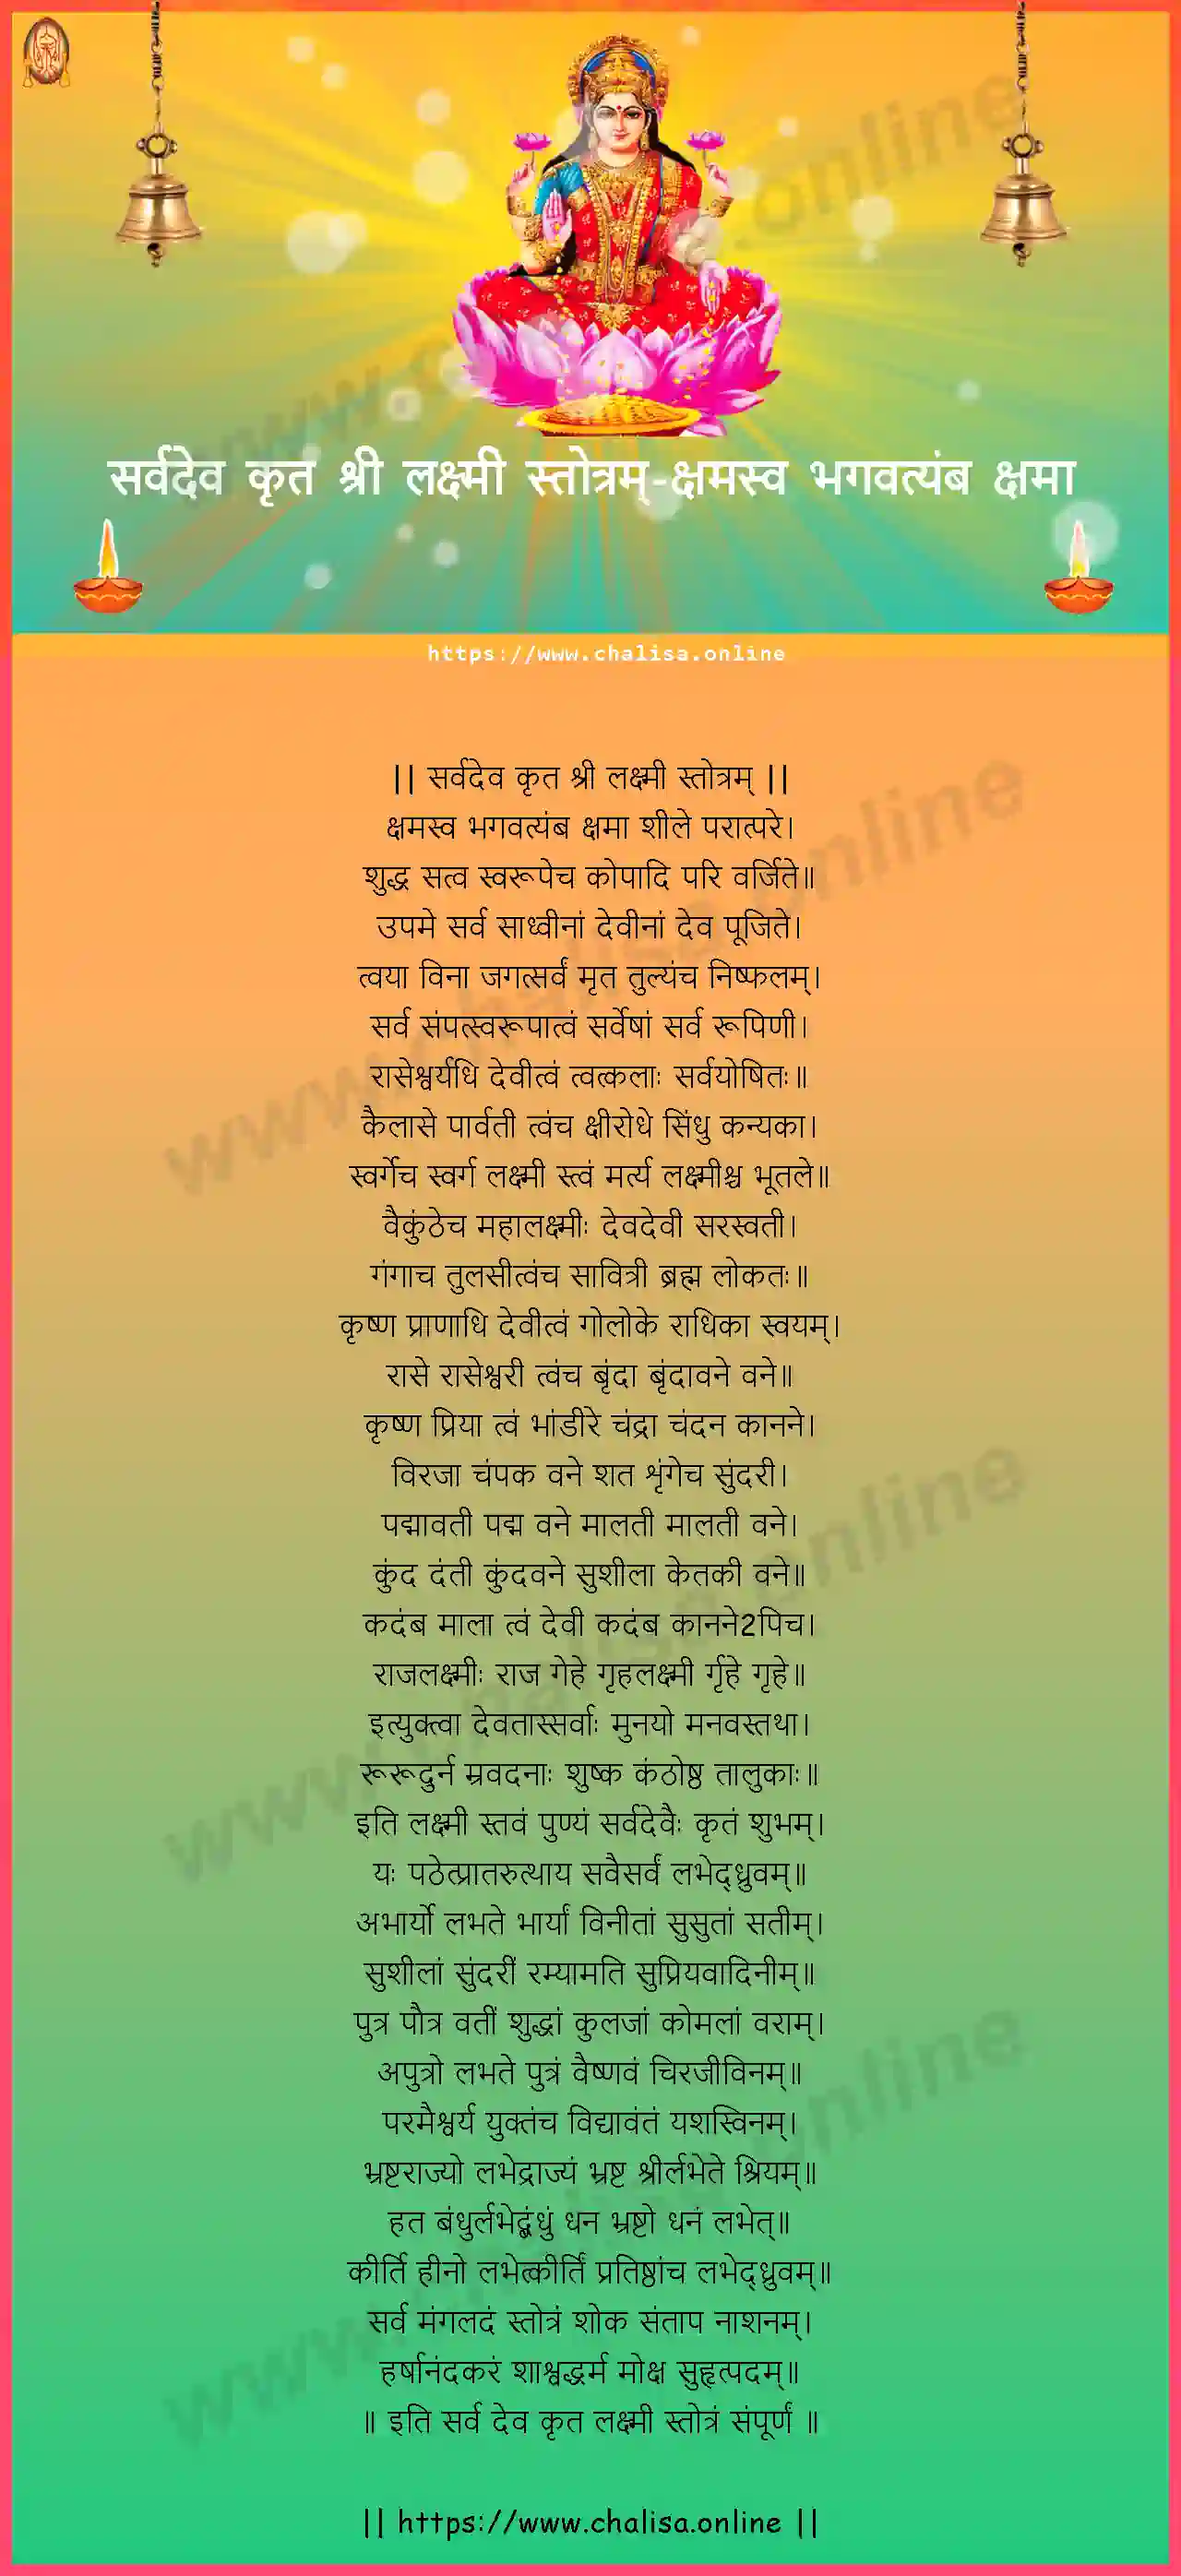 ksamasva-bhagavatyamba-sarvadeva-kruta-sri-lakshmi-stotram-hindi-hindi-lyrics-download